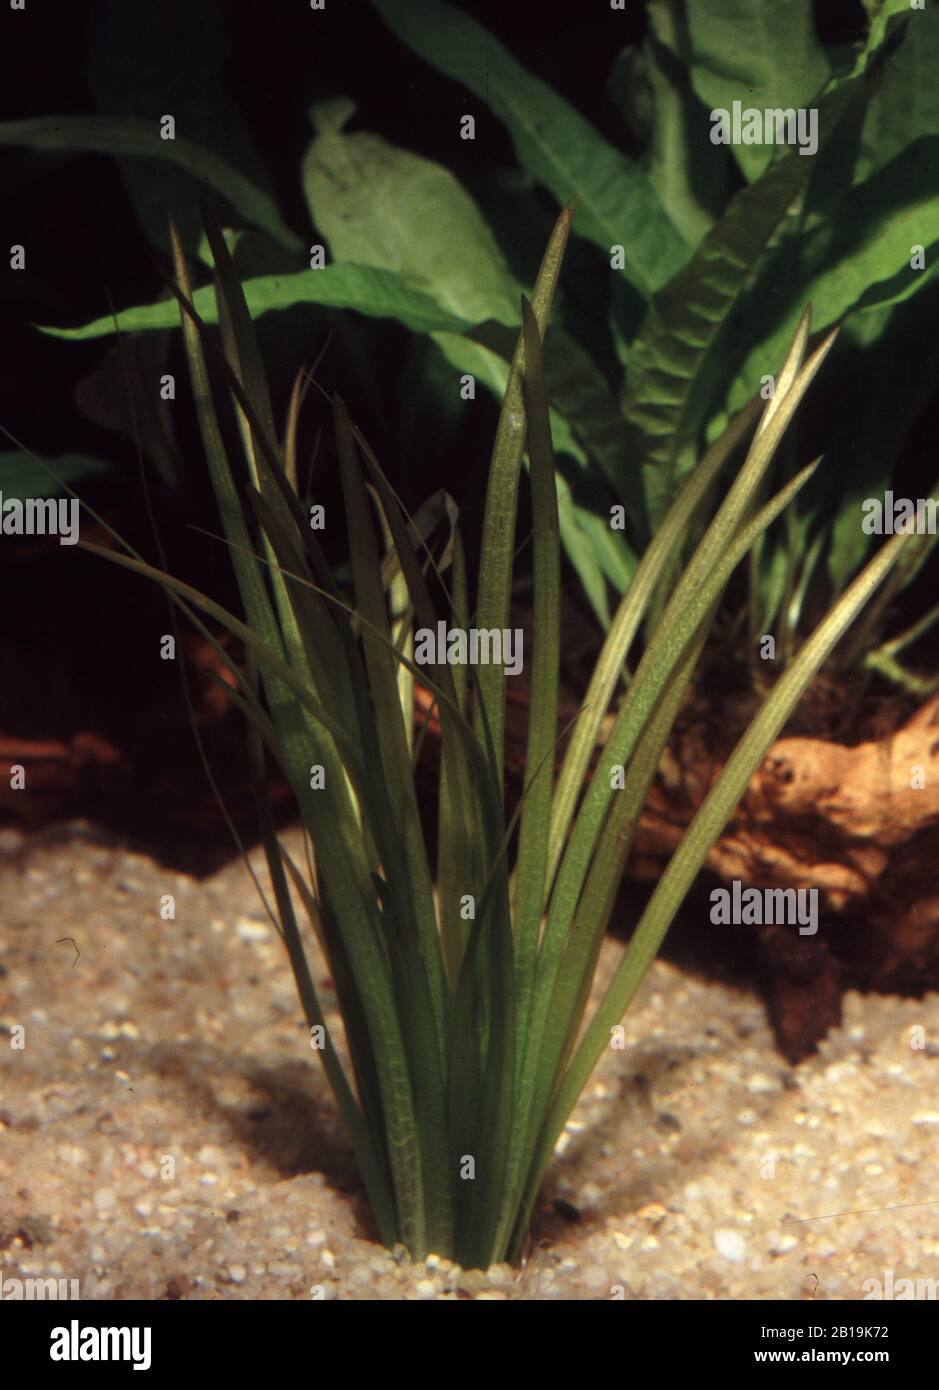 Wild celery or Eel grass, Vallisneria spiralis Stock Photo